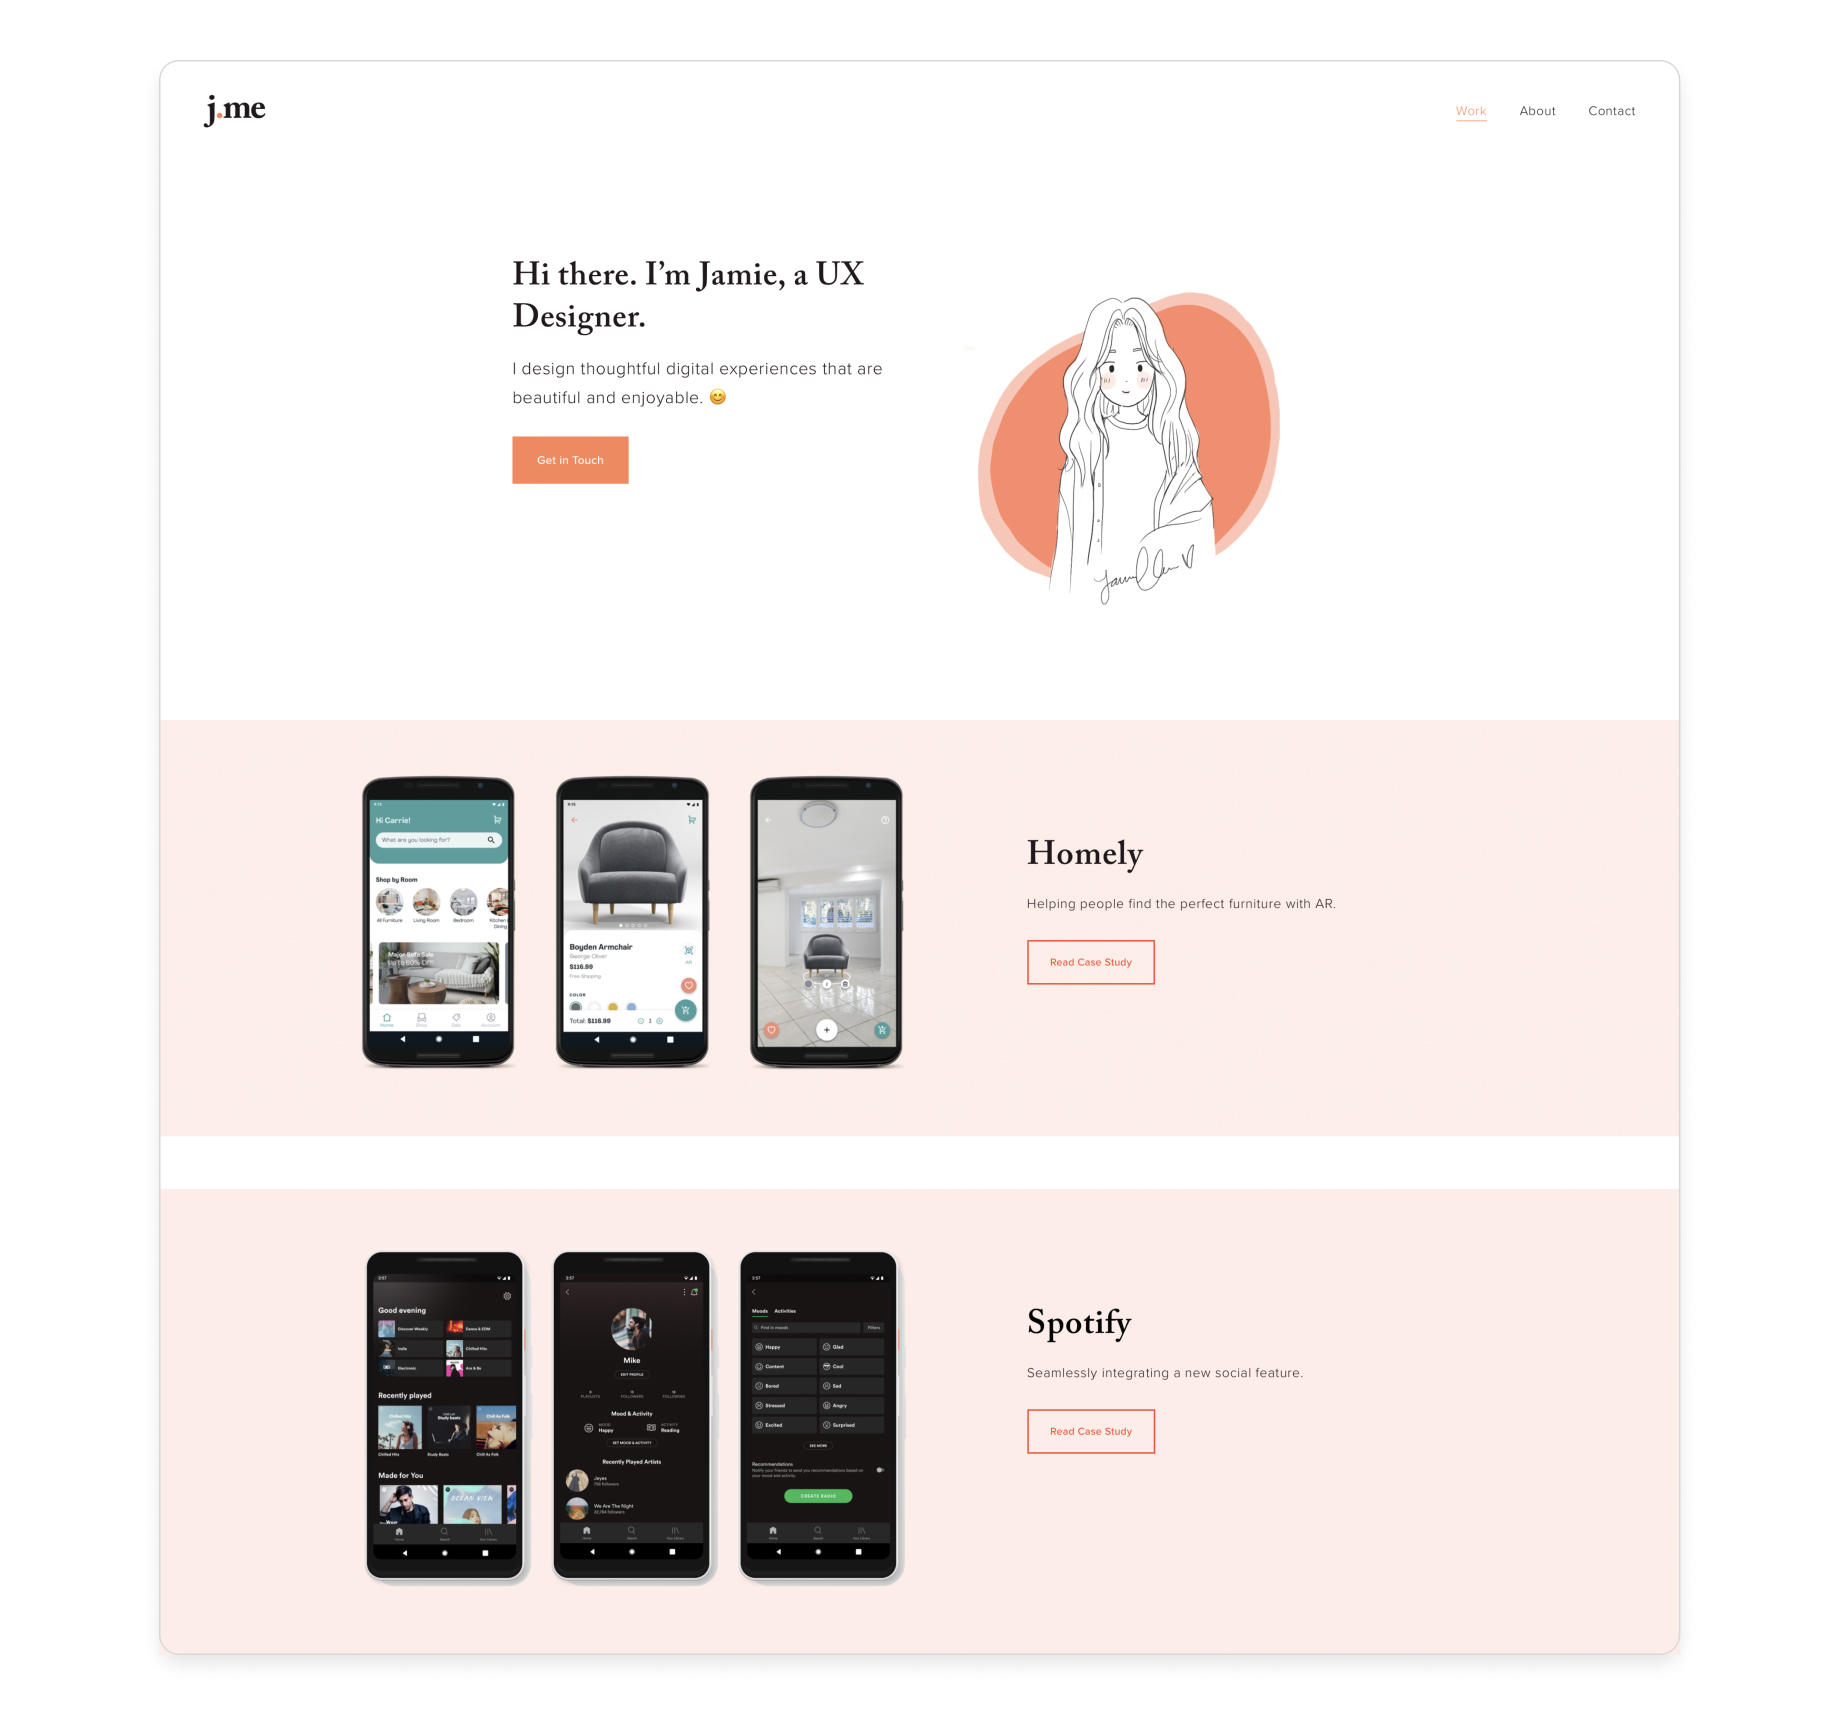 UX / UI Design Portfolio – Enia Amlashi